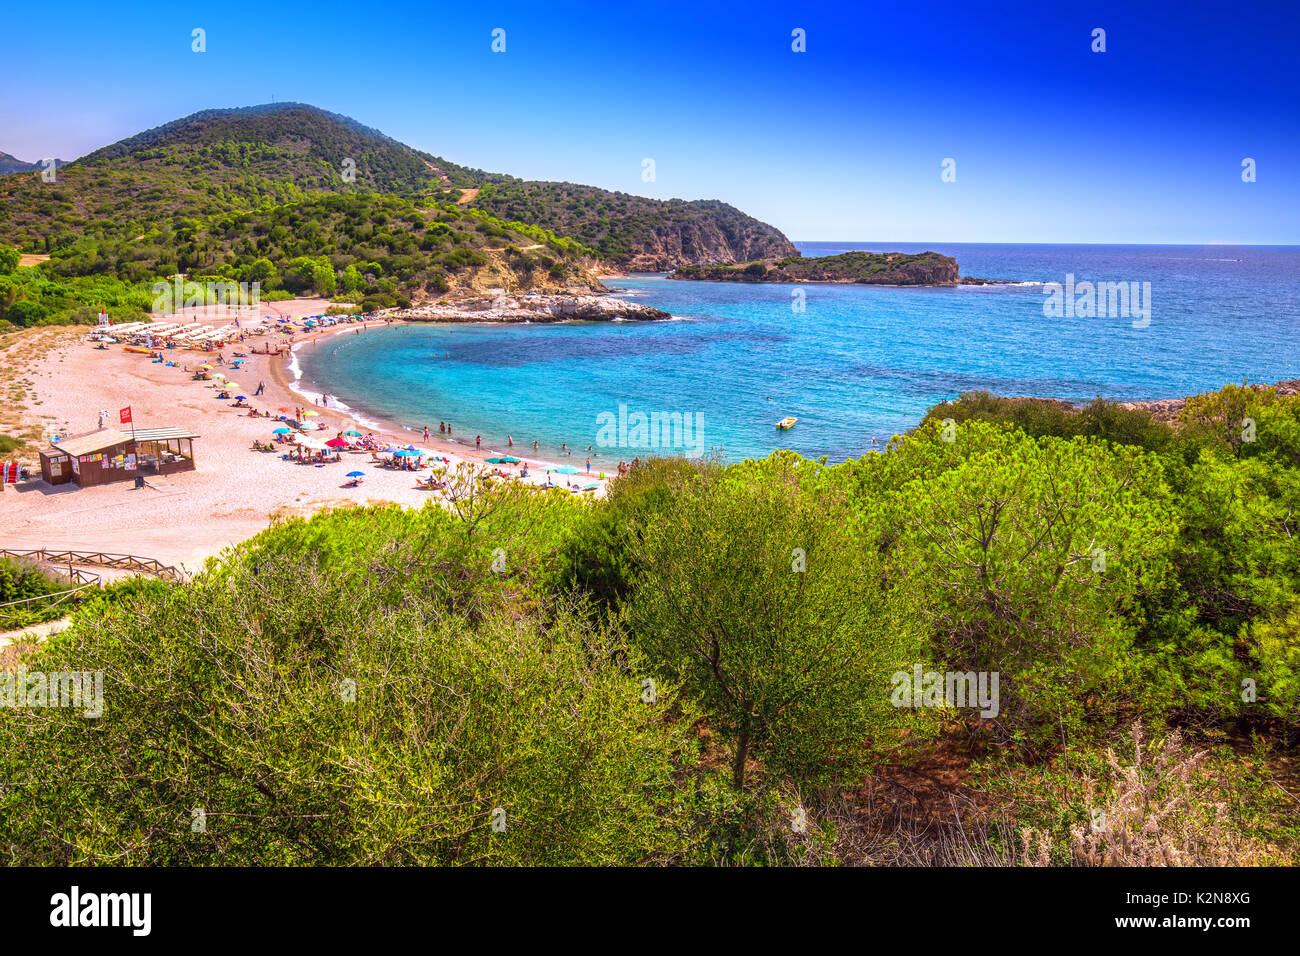 Su Portu Beach Resort, Chia, Sardinien, Italien, Europa. Sardinien ist die zweitgrößte Insel im Mittelmeer Stockfoto